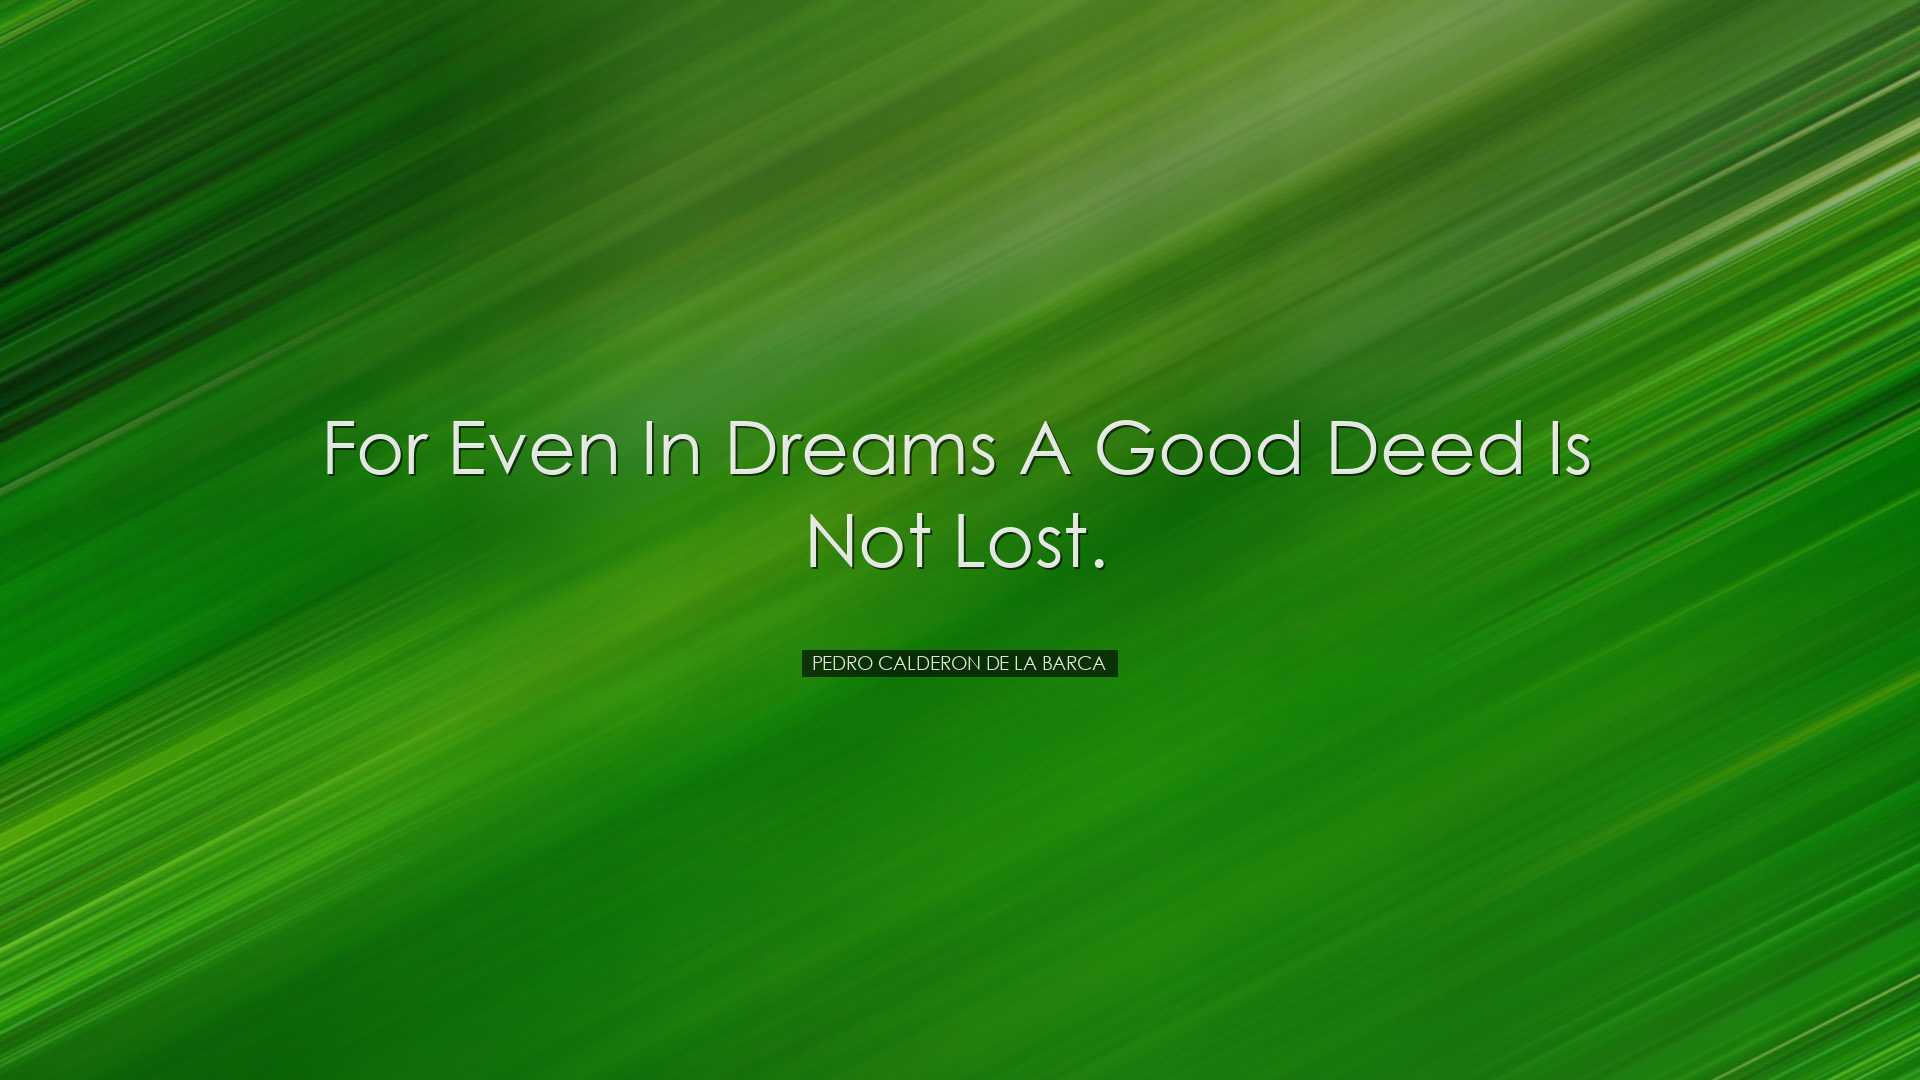 For even in dreams a good deed is not lost. - Pedro Calderon de la